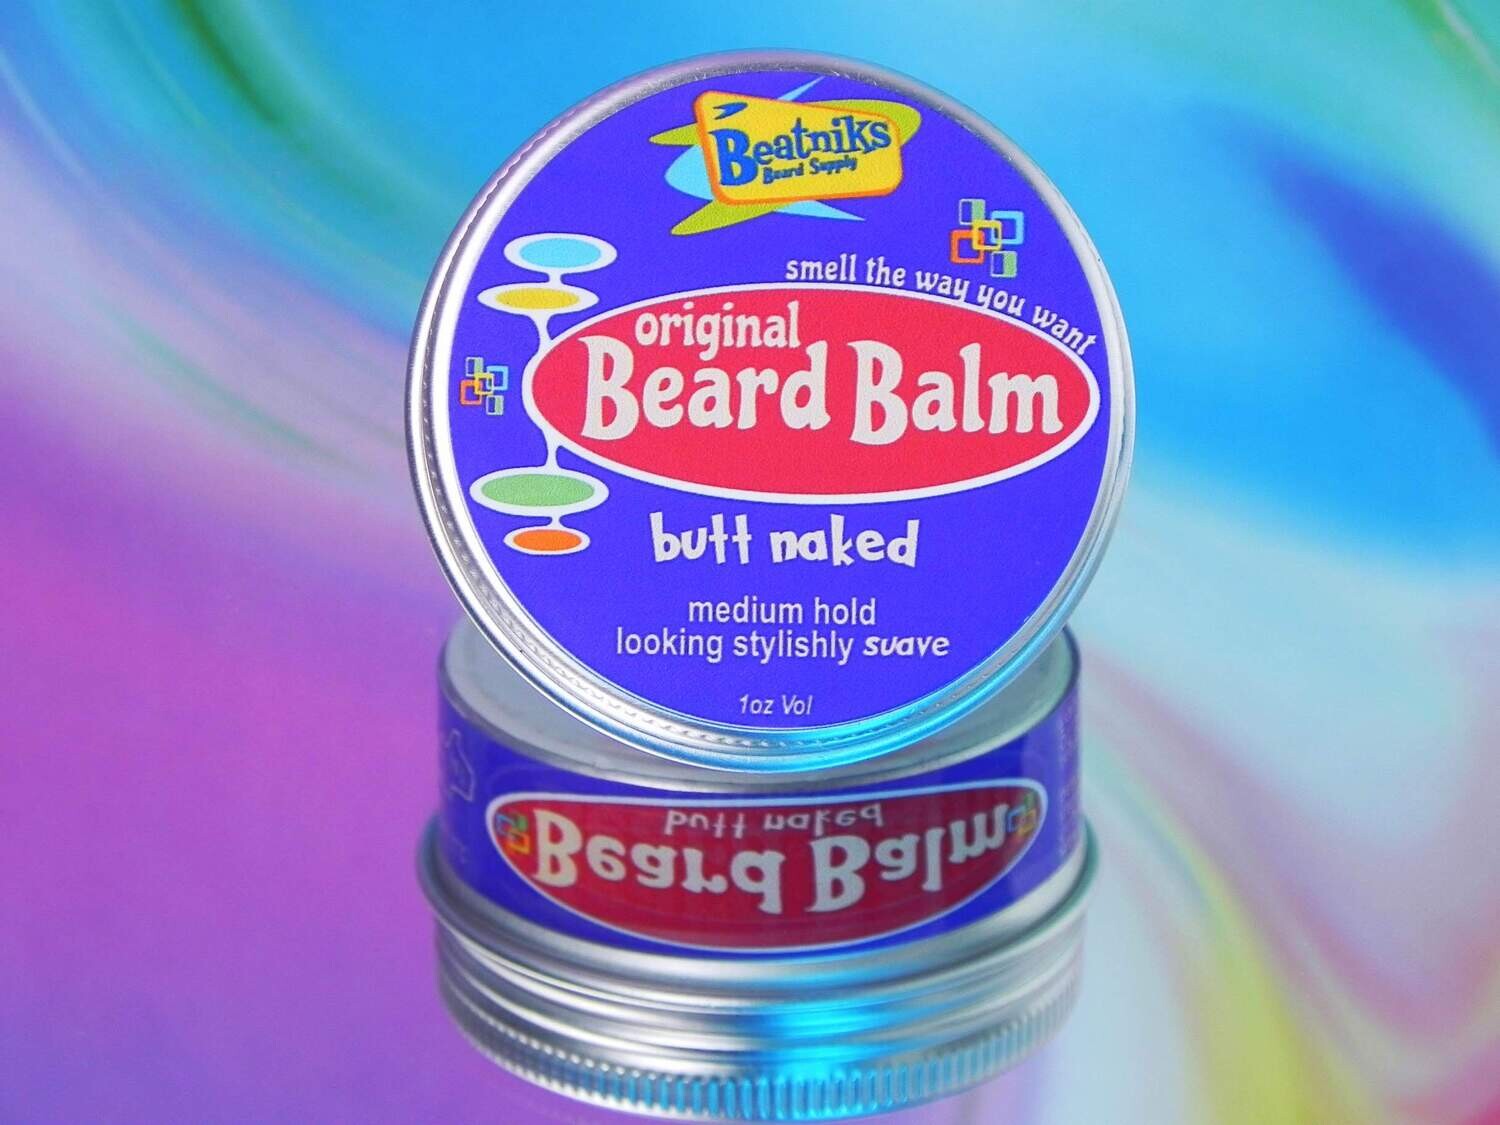 BUTT NAKED | Beard Balm Original